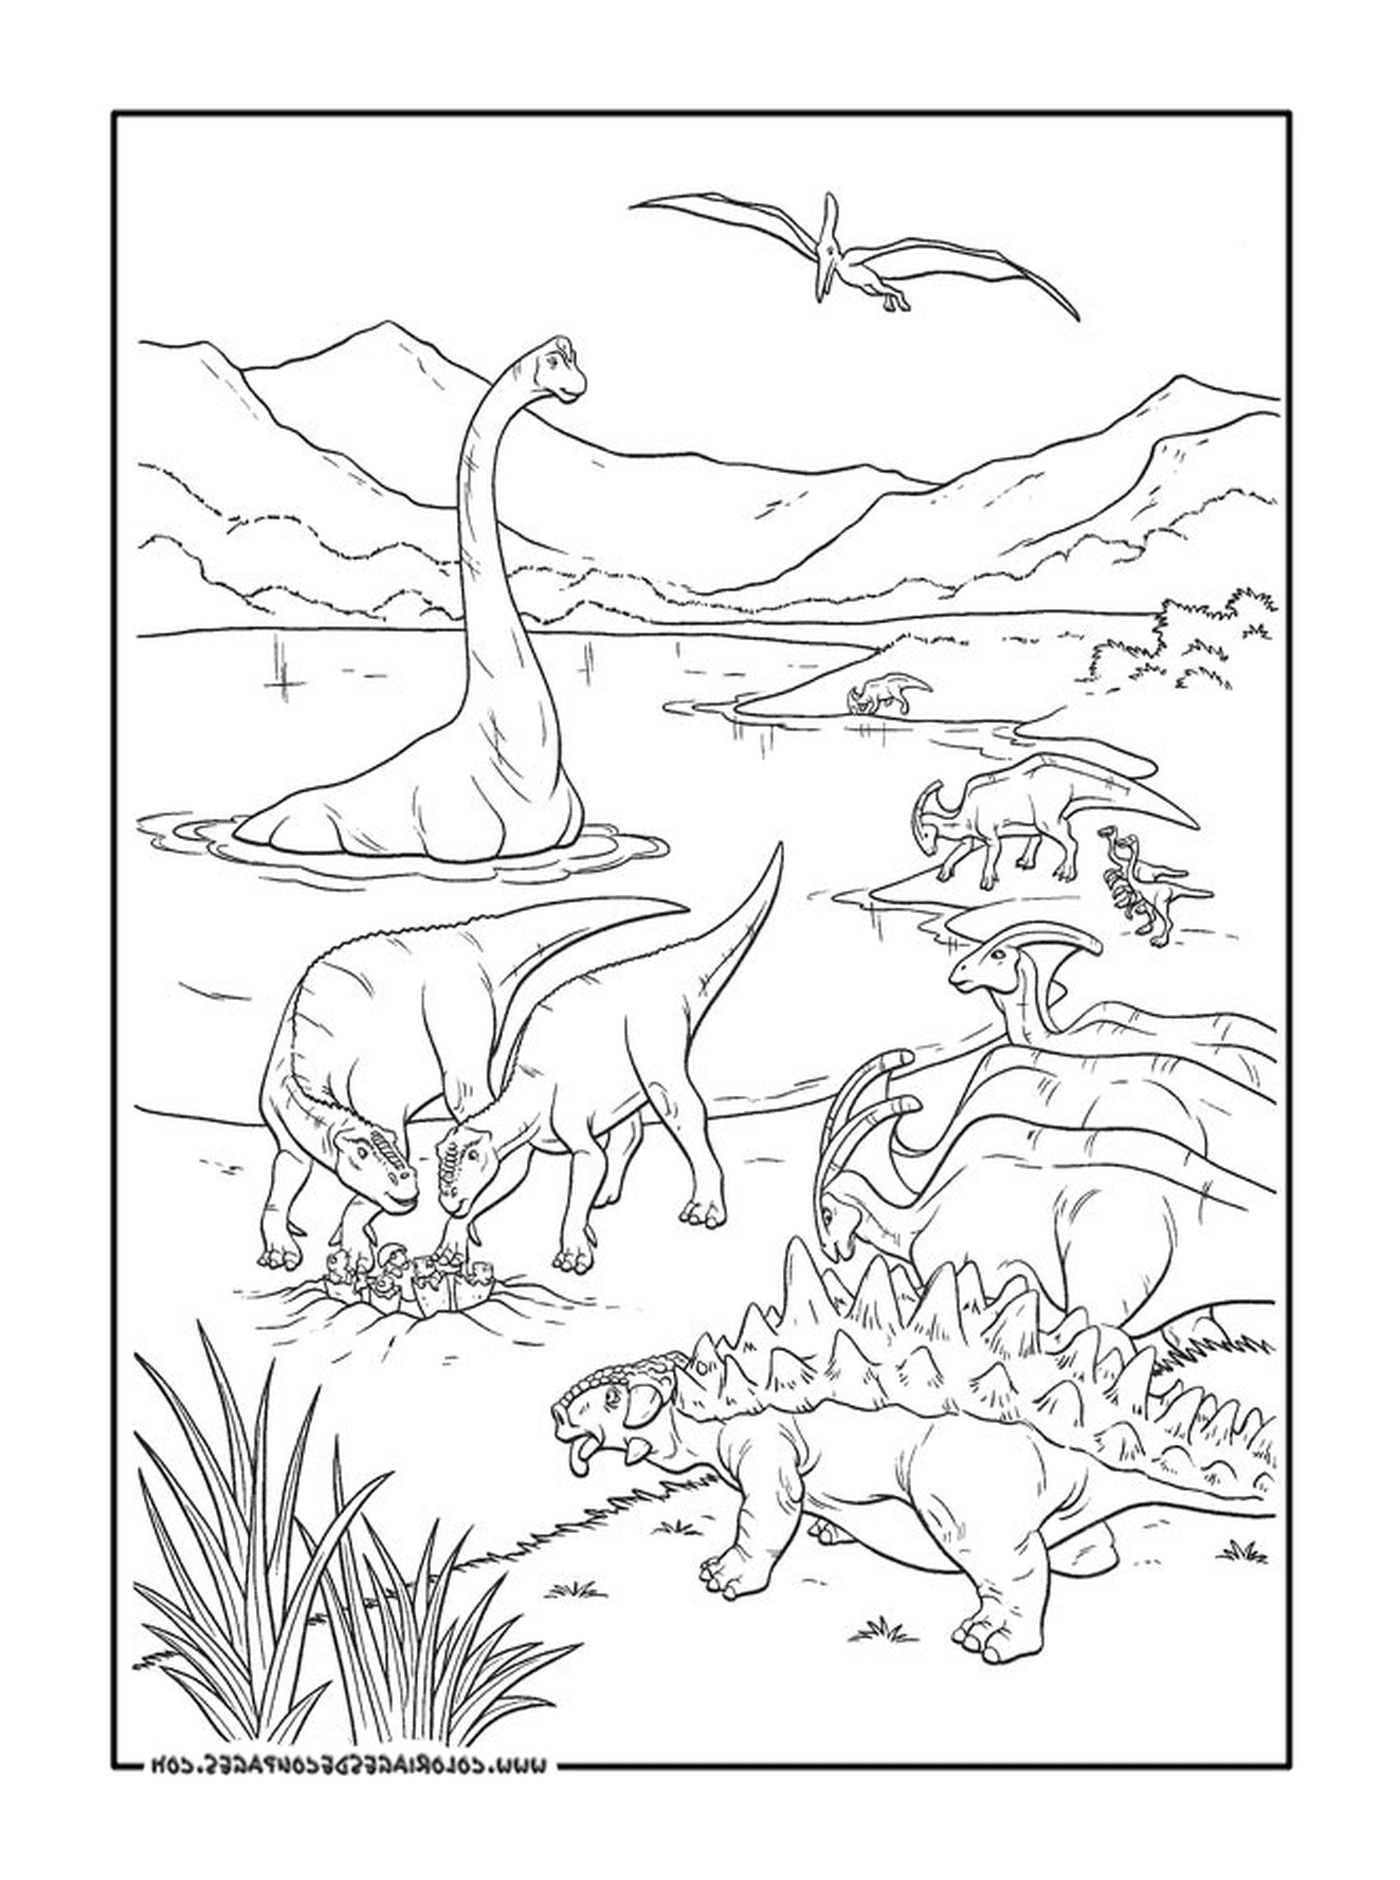   Un adulte d'un groupe de dinosaures 